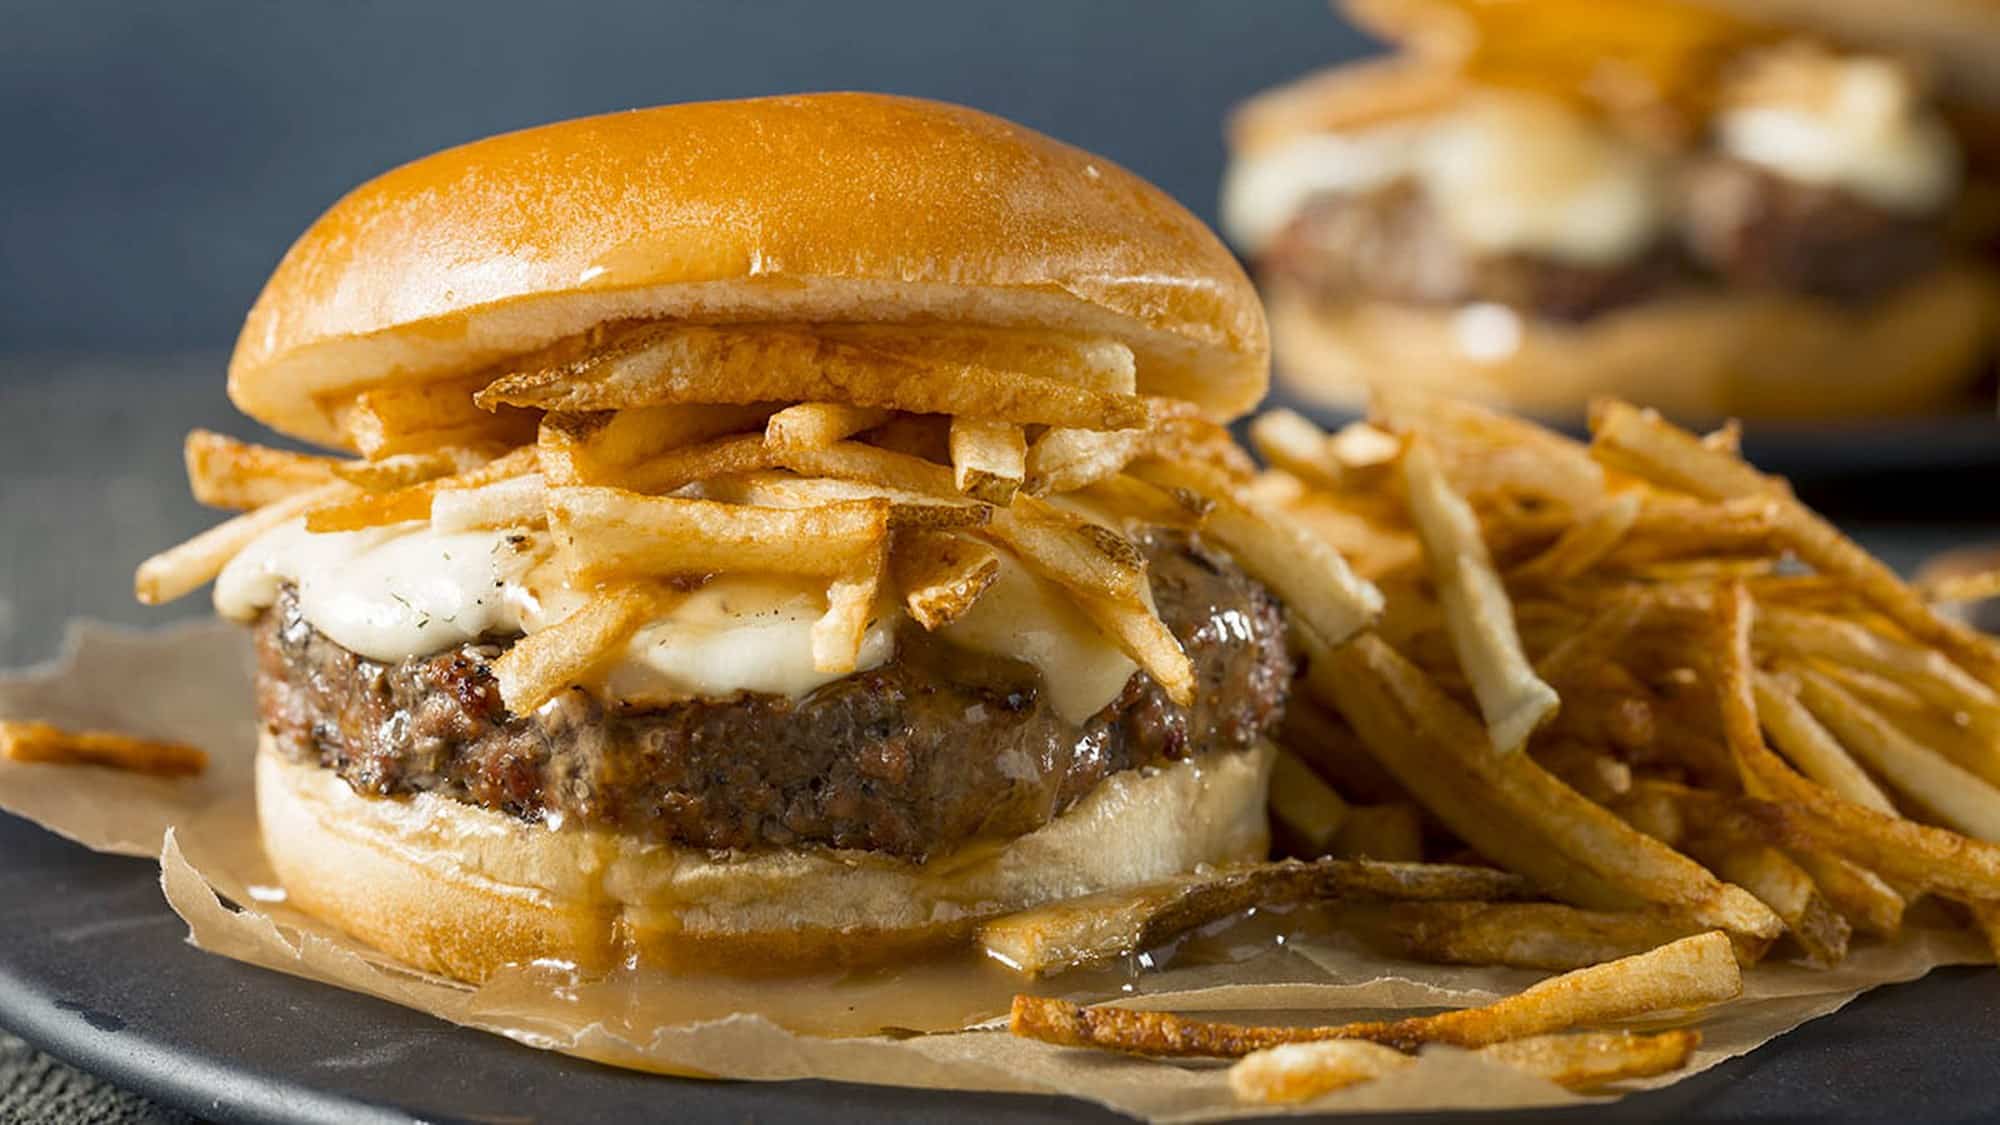 Gros plan sur un burger de boeuf l'épicier au BBQ, garni avec les ingrédients d'une poutine: frites, fromage en grains et sauce brune.